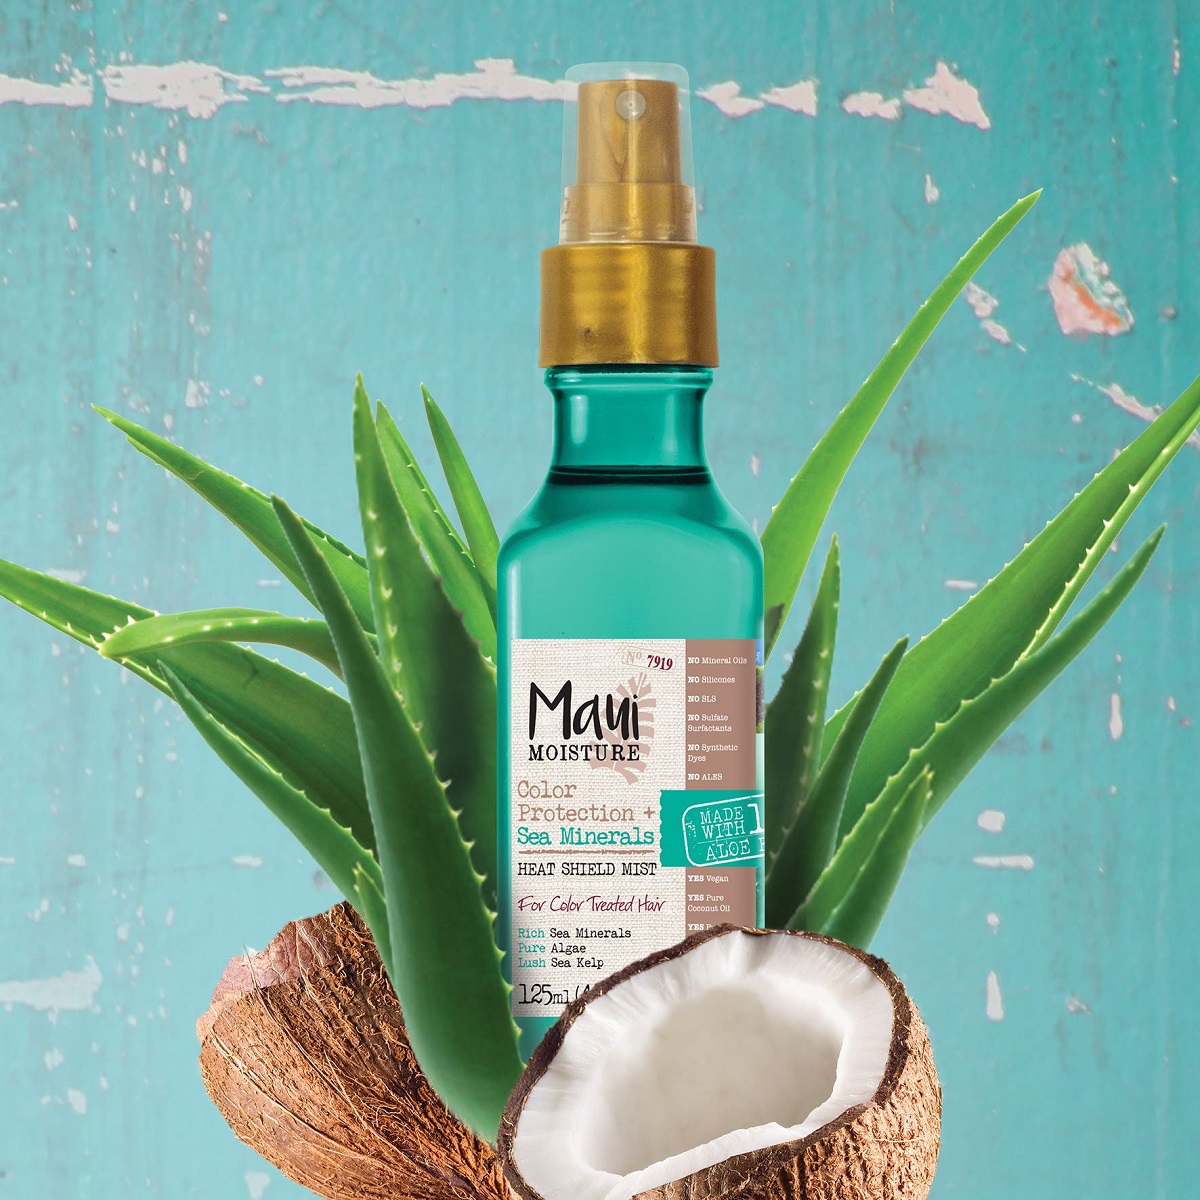 اسپری مو مواد معدنی دریایی مائویی (Maui) اصل | محافظت از مو در برابر گرما و دمای بالا، تثبیت رنگ مو | Color Protection Sea Minerals Heat Shield Mist 125ml